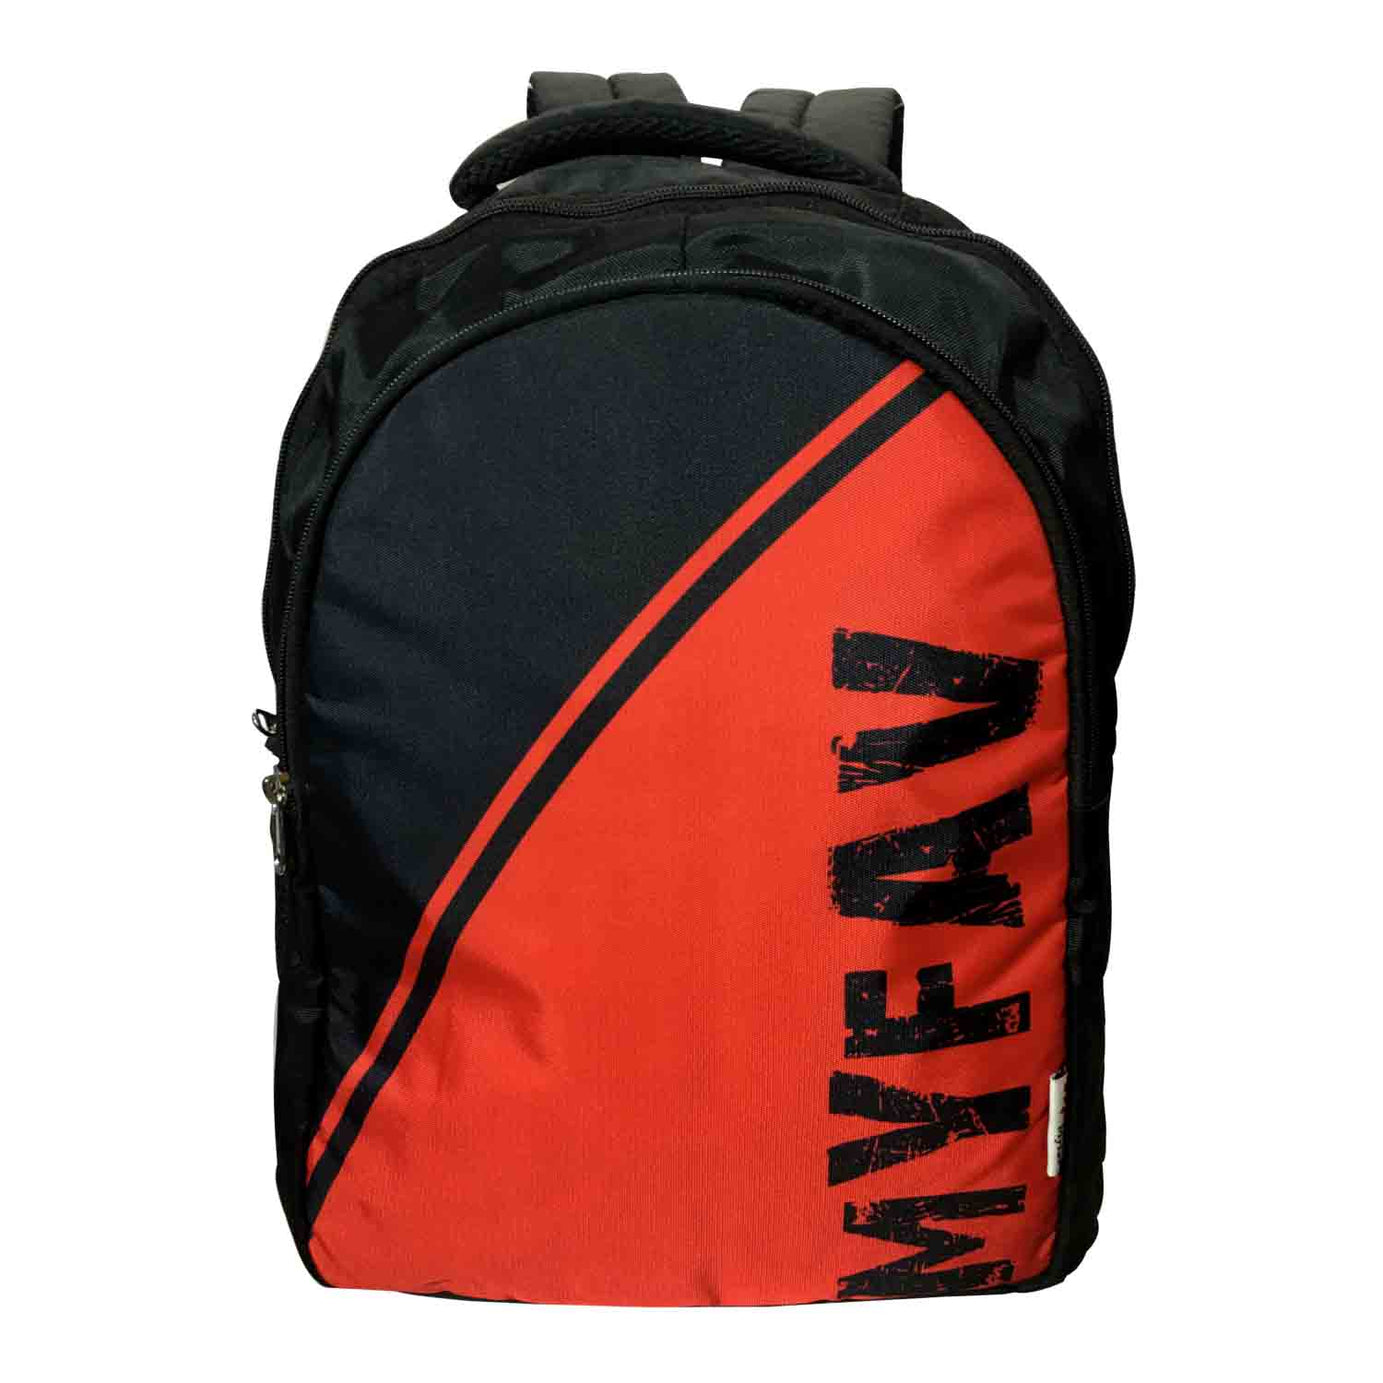 My Fav Red Black Laptop Backpack for Men Women / Office Backpack / School Backpack for Boys Girls